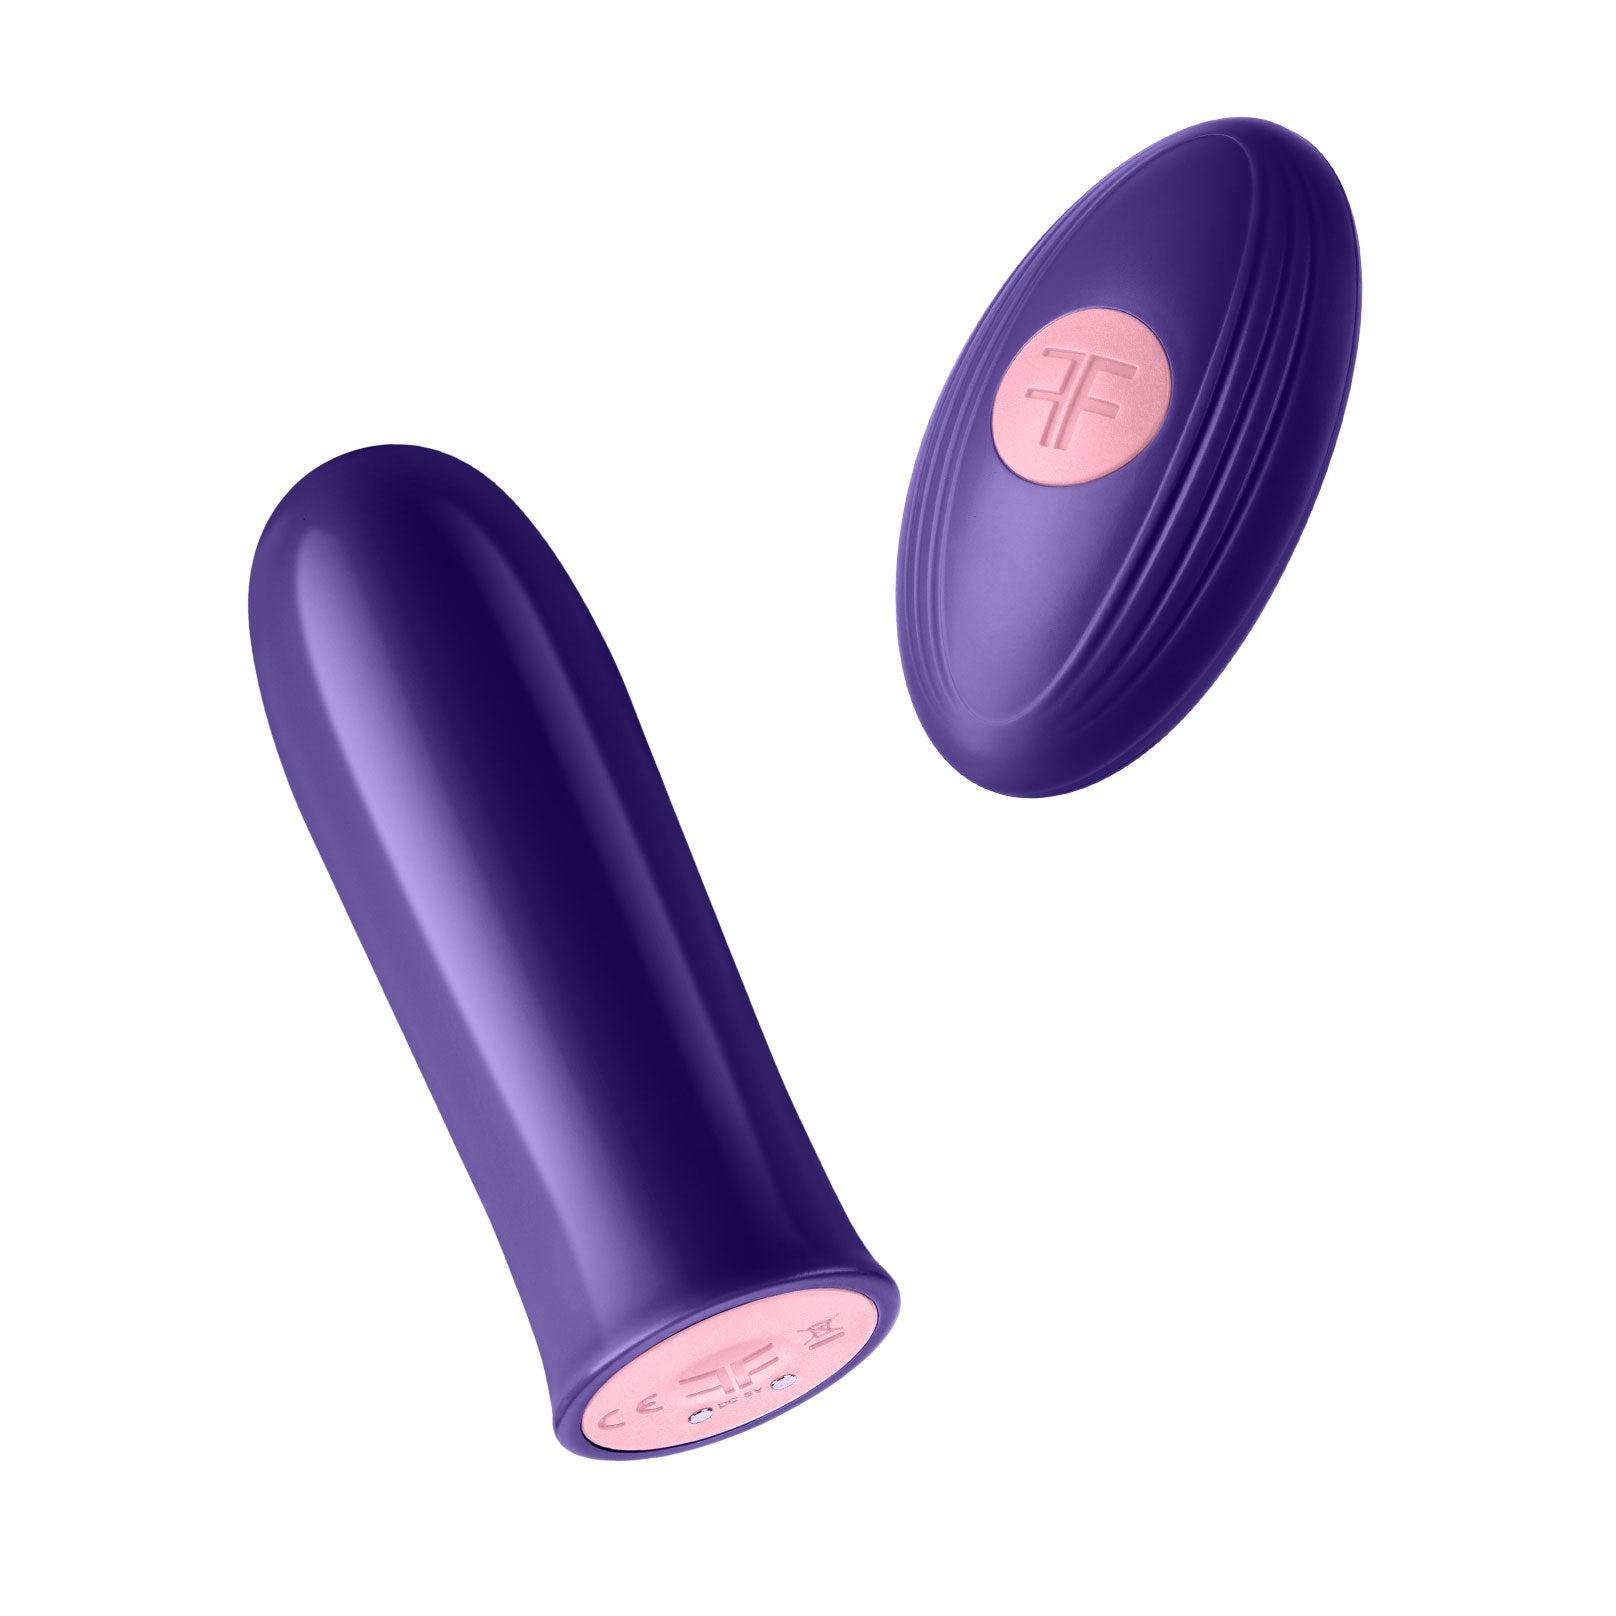 Versa Bullet With Remote - Dark Purple